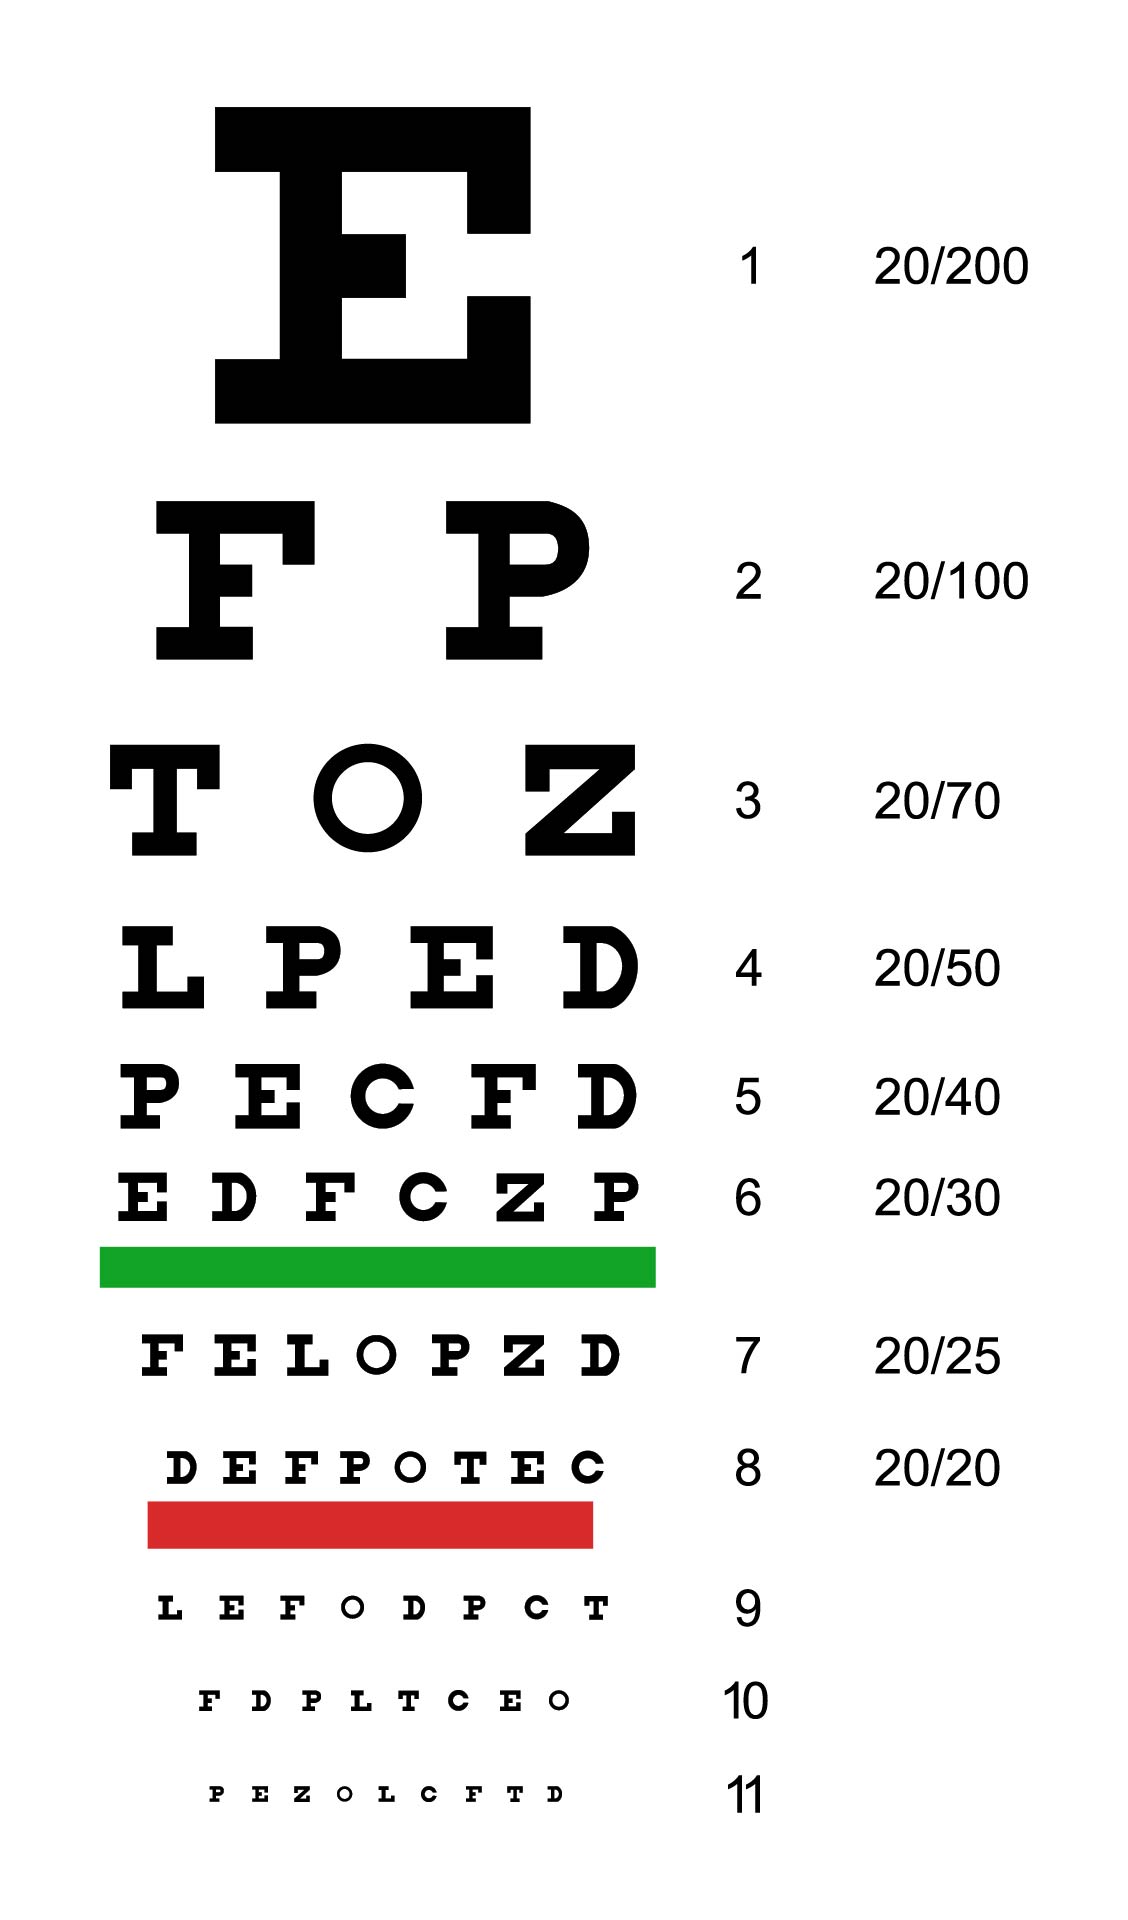 free-printable-eye-charts-for-eye-exams-image-to-u